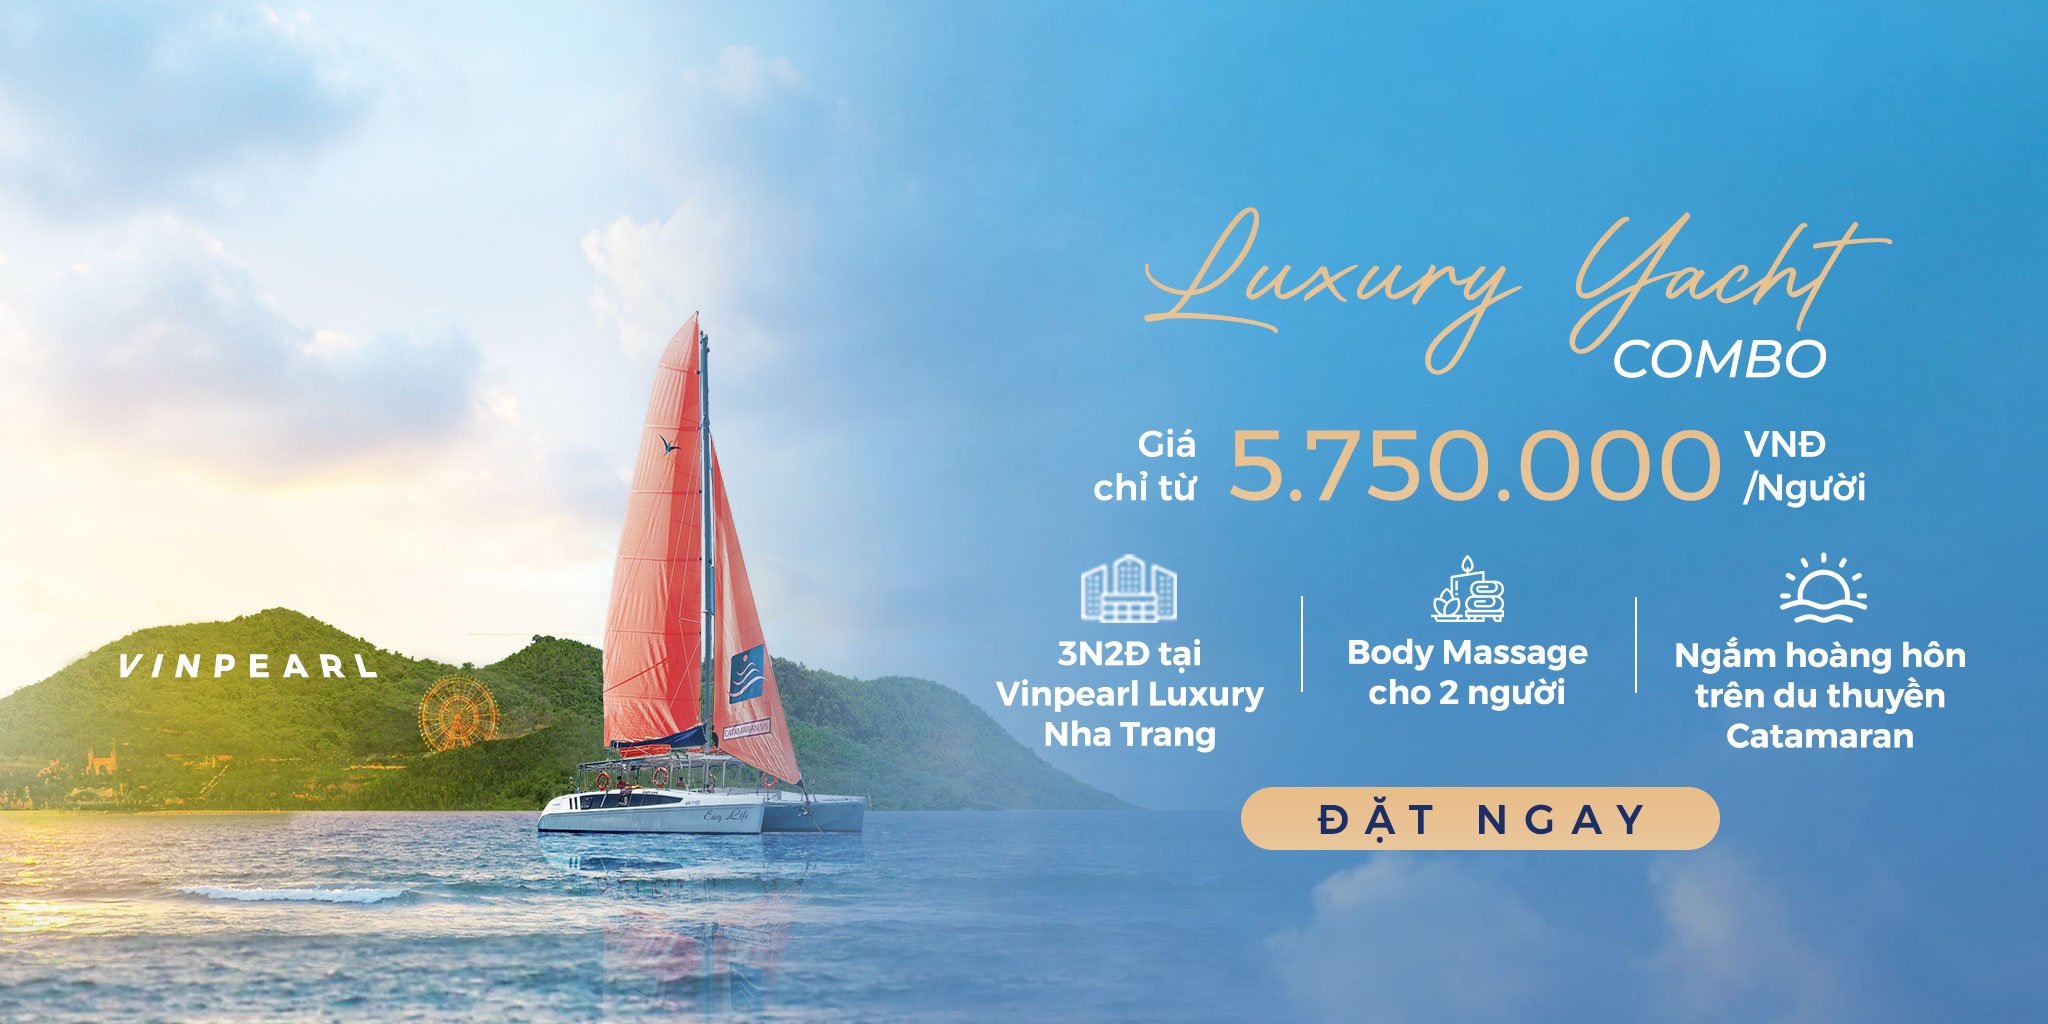 luxury-Yacht-combo